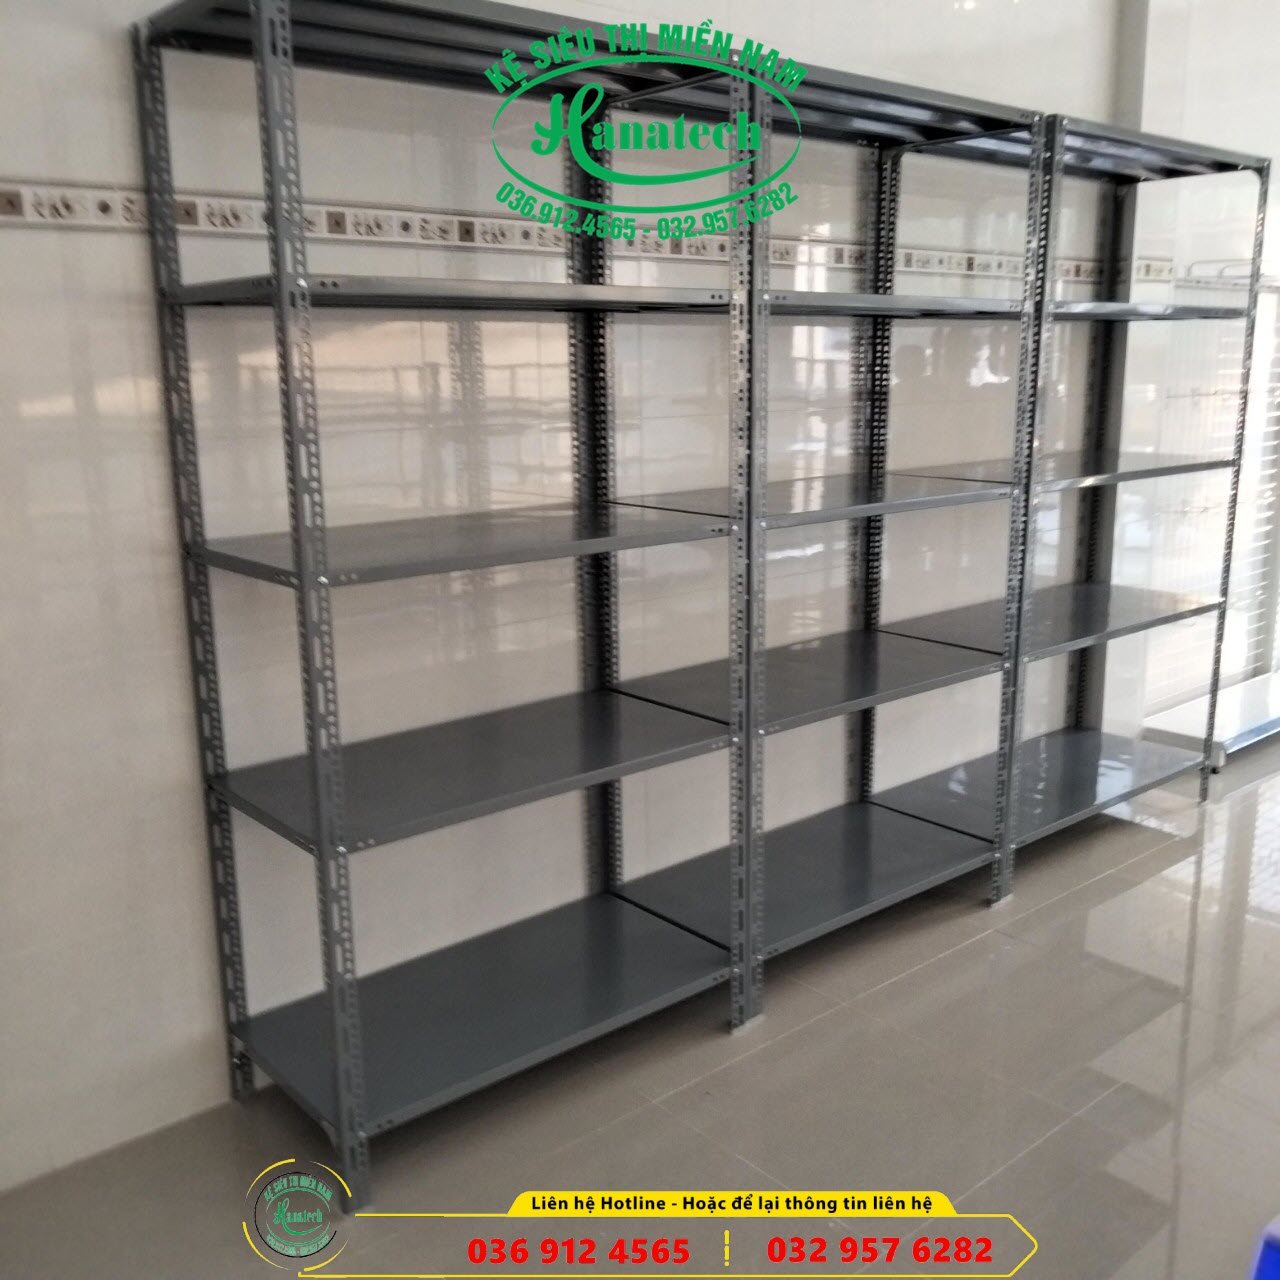 Giá kệ siêu thị trưng bày sản phẩm cho cửa hàng tiện lợi tại Bình Phước